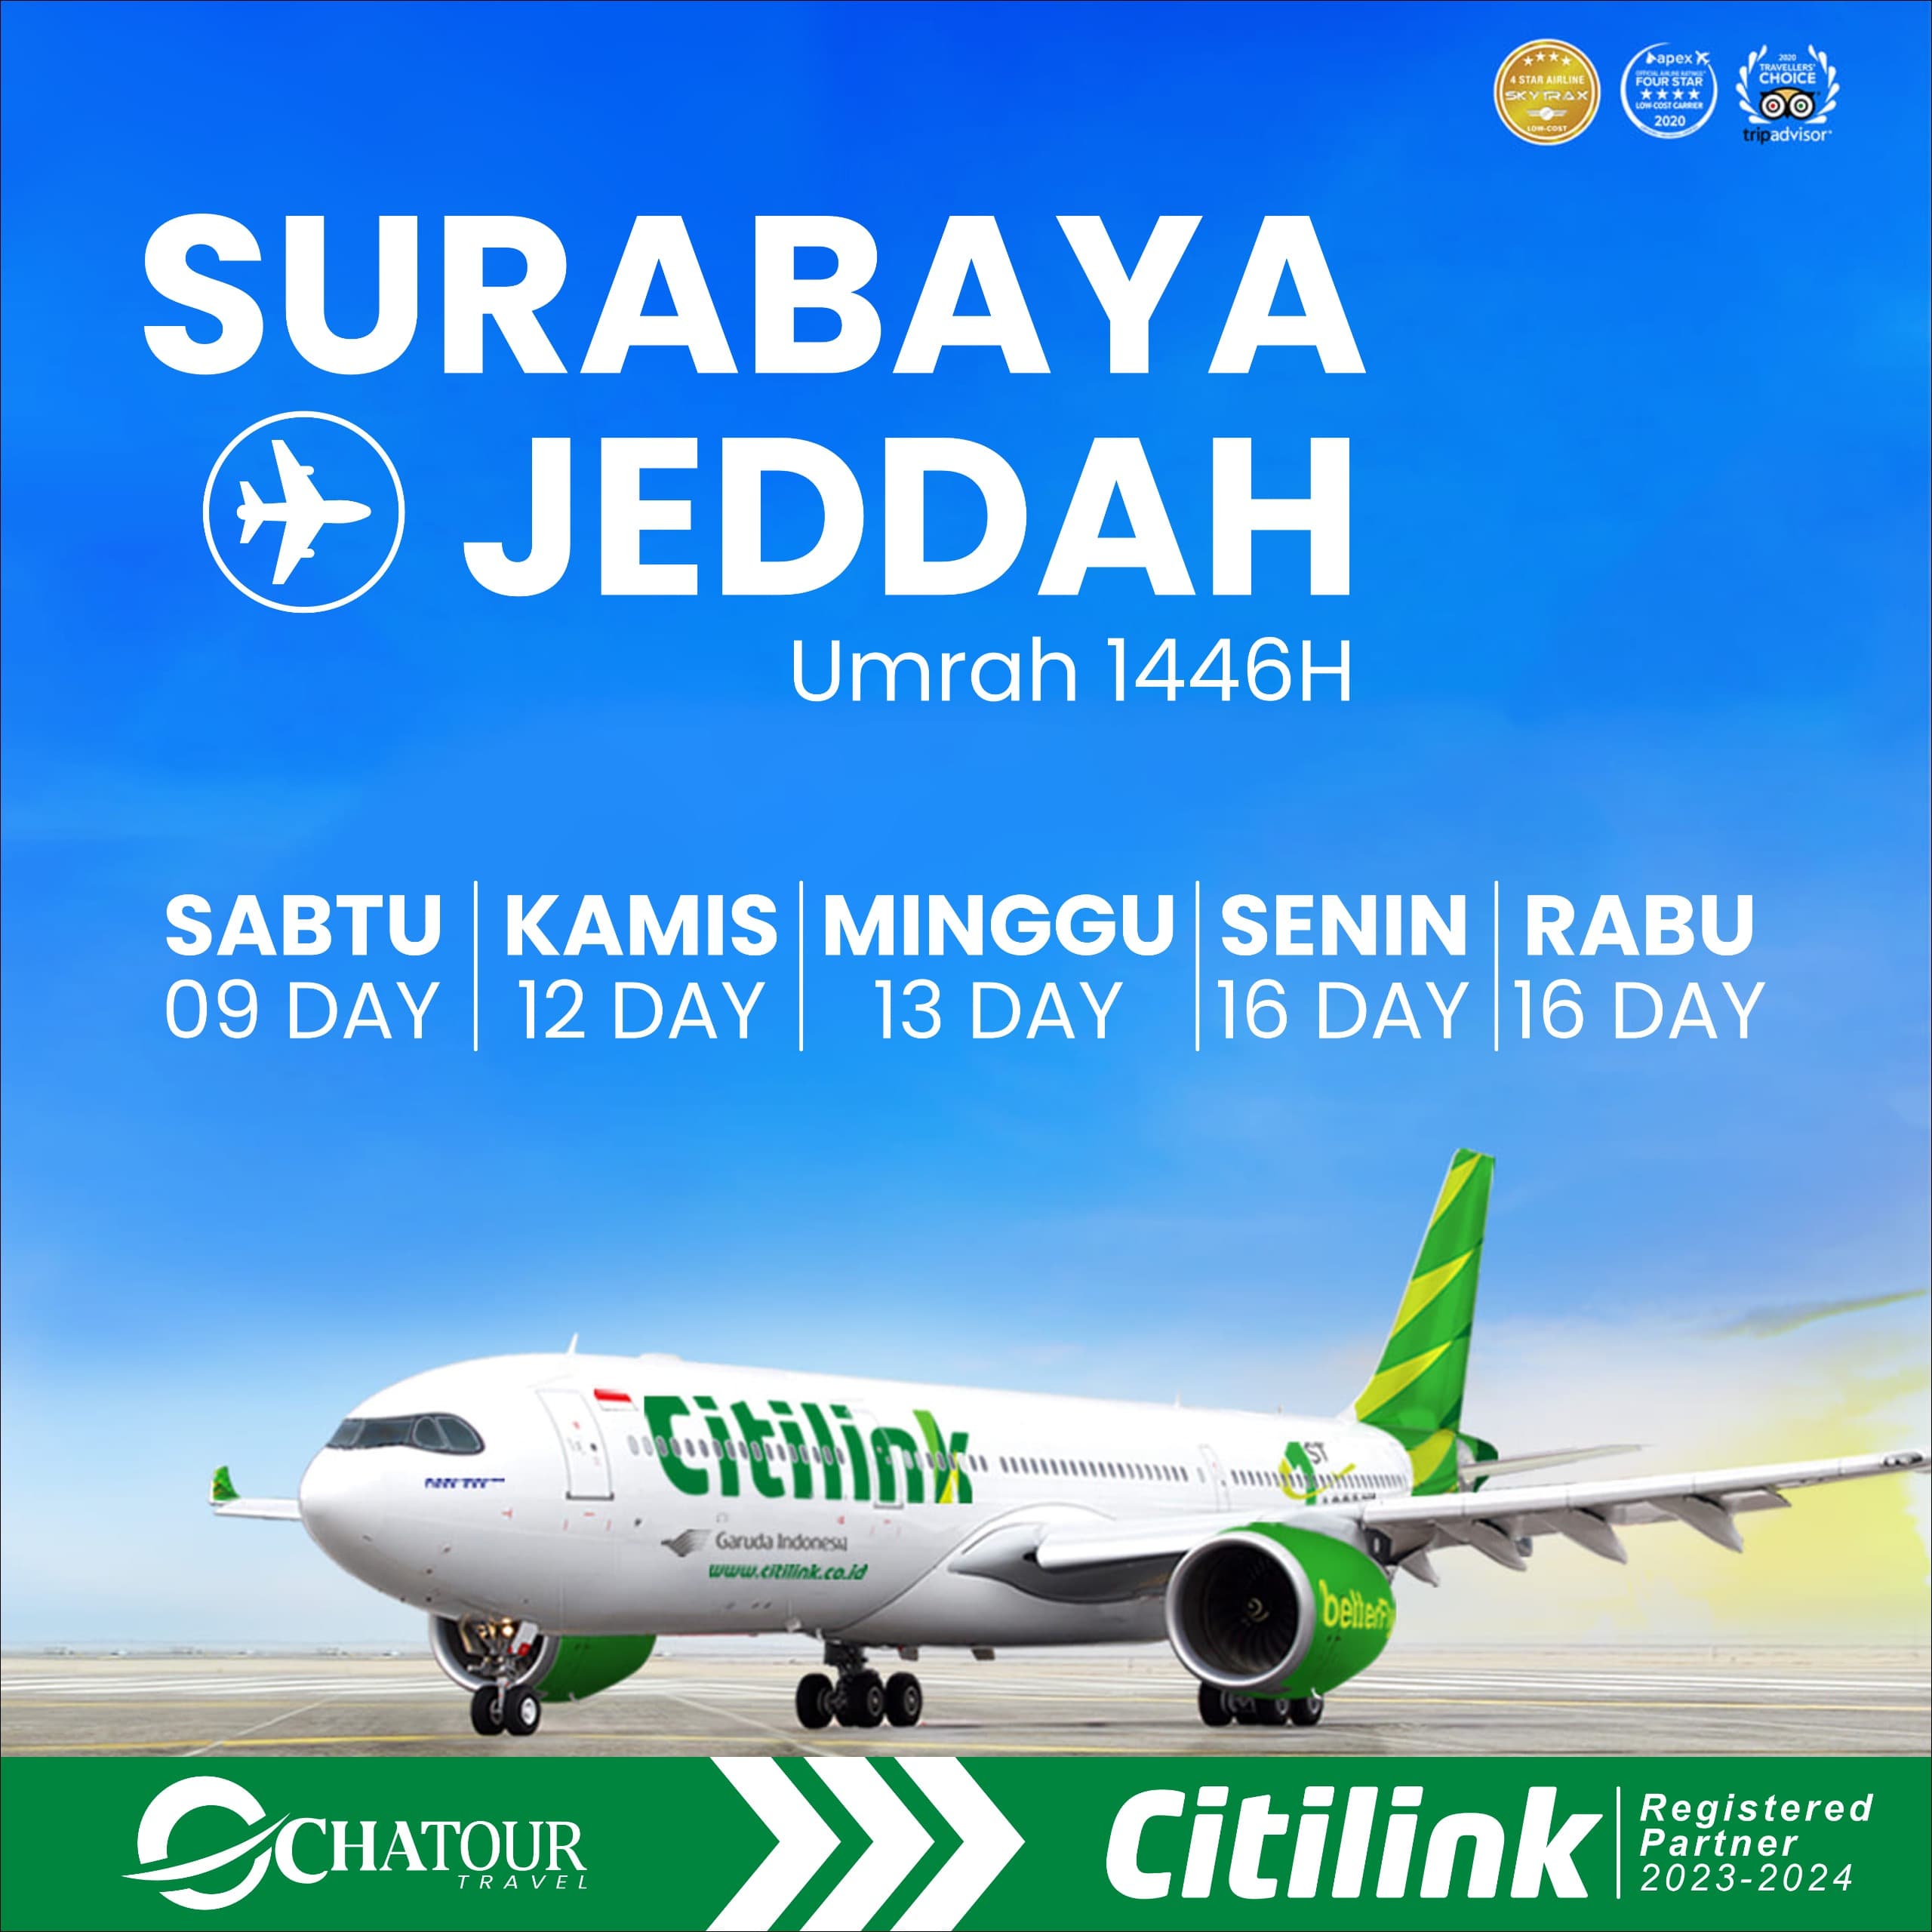 Kerjasama Dengan Citilink Indonesia, Chatour Travel Mengedepankan Pelayanan Kekeluargaan Untuk Jamaah Umrah